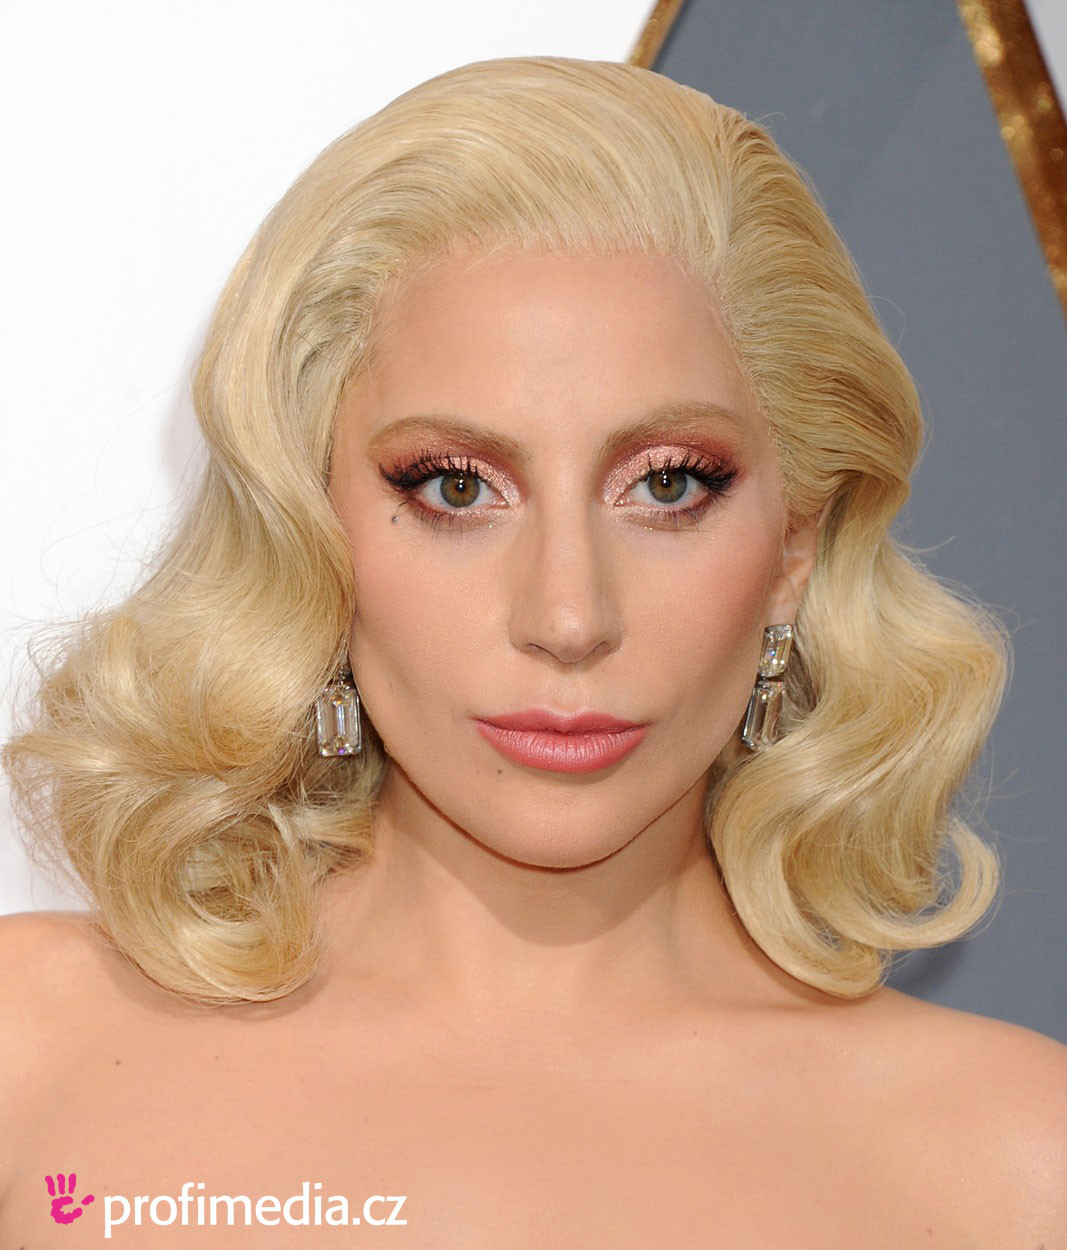 Frisuren Ausprobieren
 Lady Gaga frisur zum Ausprobieren in eFrisuren